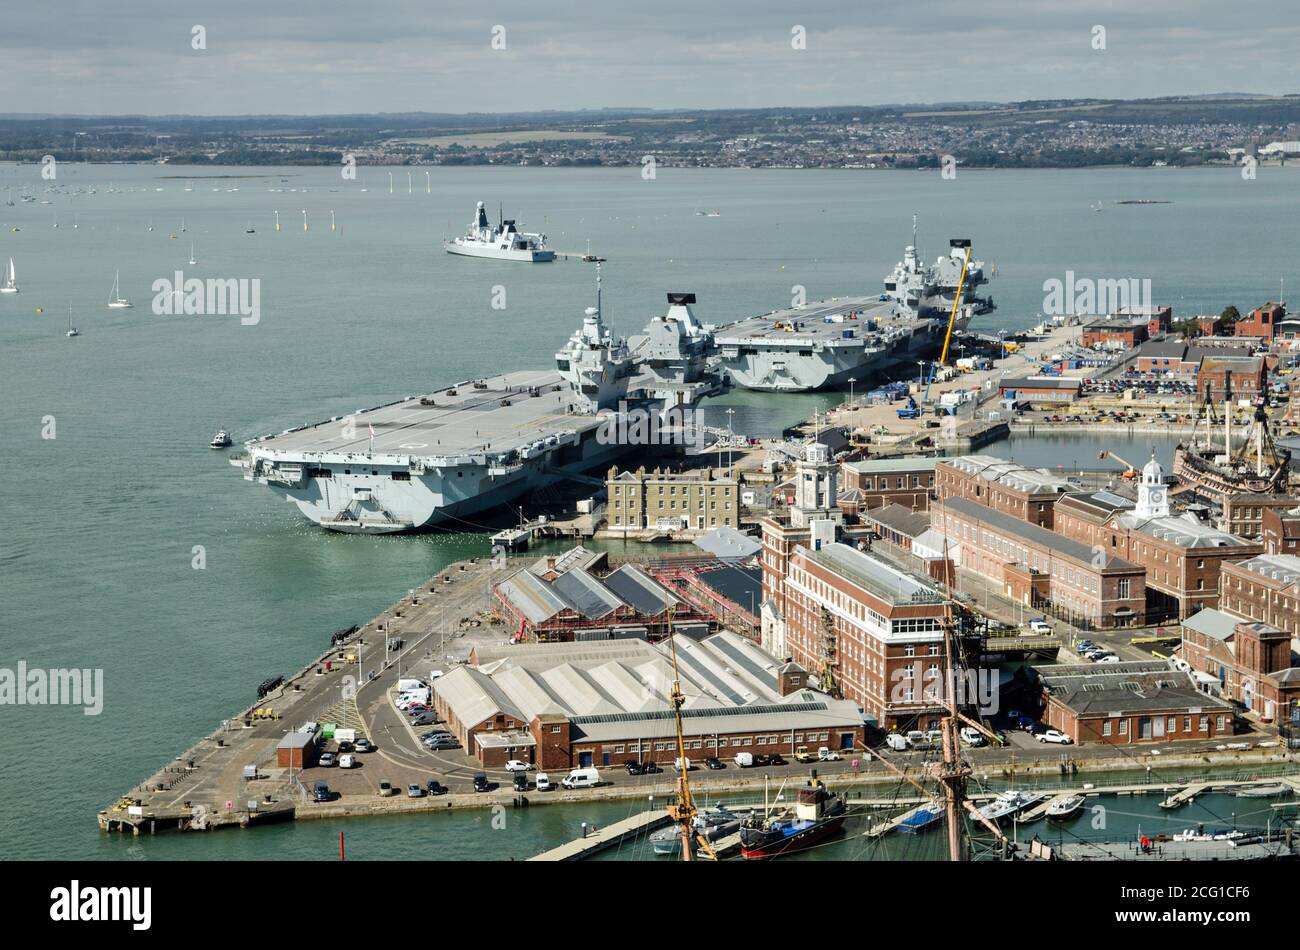 Luftaufnahme der beiden größten Schiffe der Royal Navy, der Flugzeugträger Queen Elizabeth und der Prinz von Wales, die nebeneinander in Port festgemacht sind Stockfoto